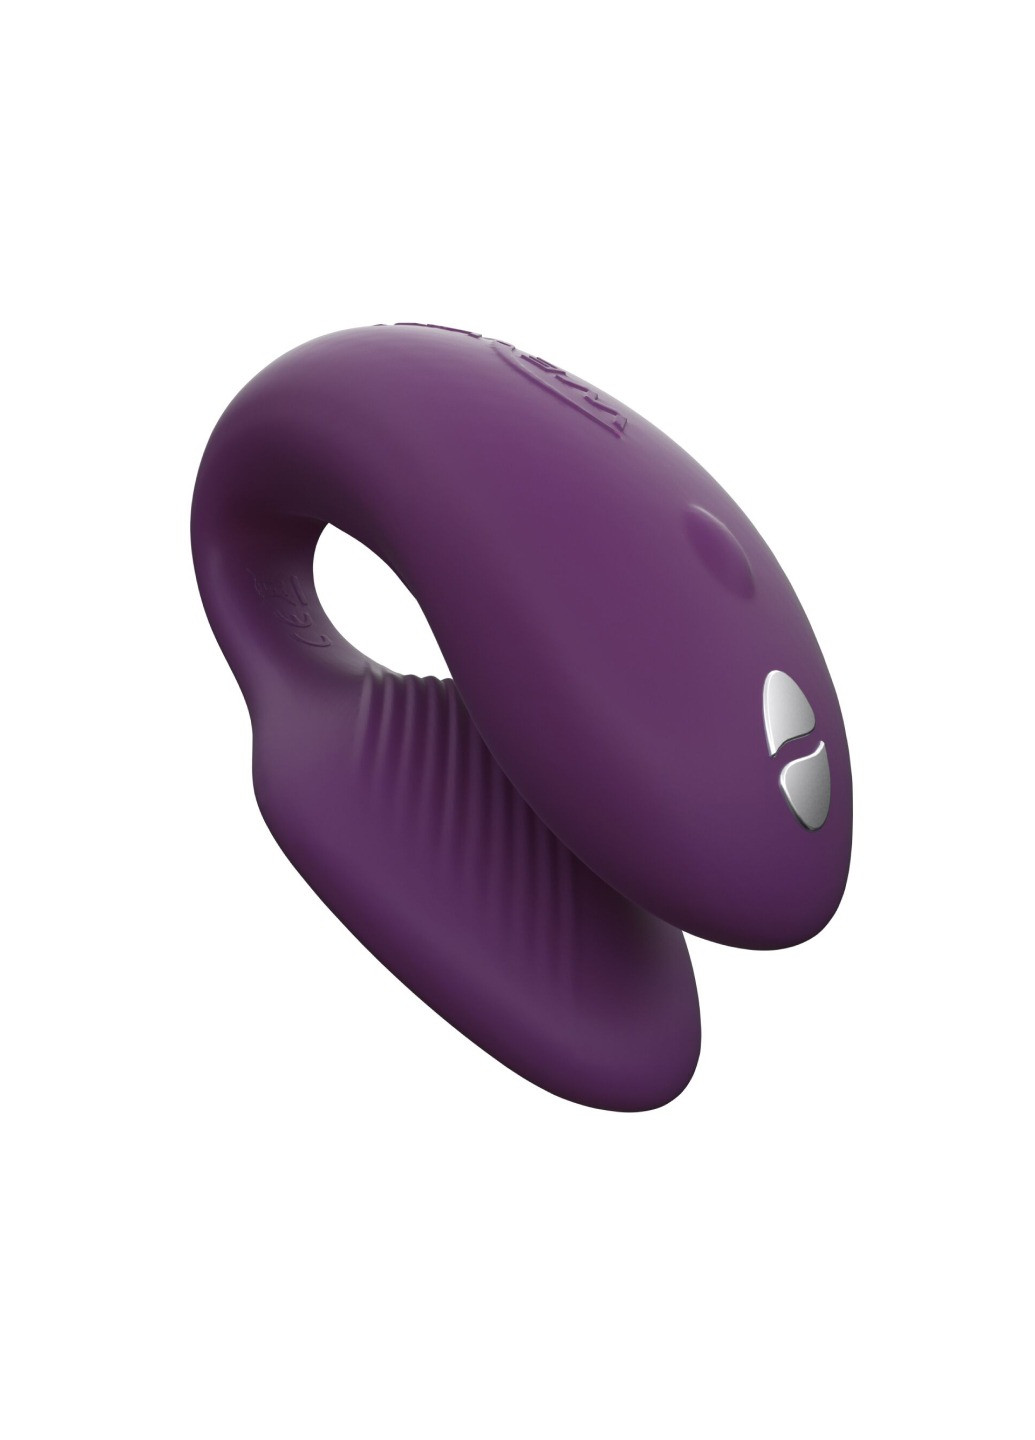 Смарт-вибратор для пар Chorus Purple, сенсорное управление вибрациями сжатием пульта We-Vibe (272615535)